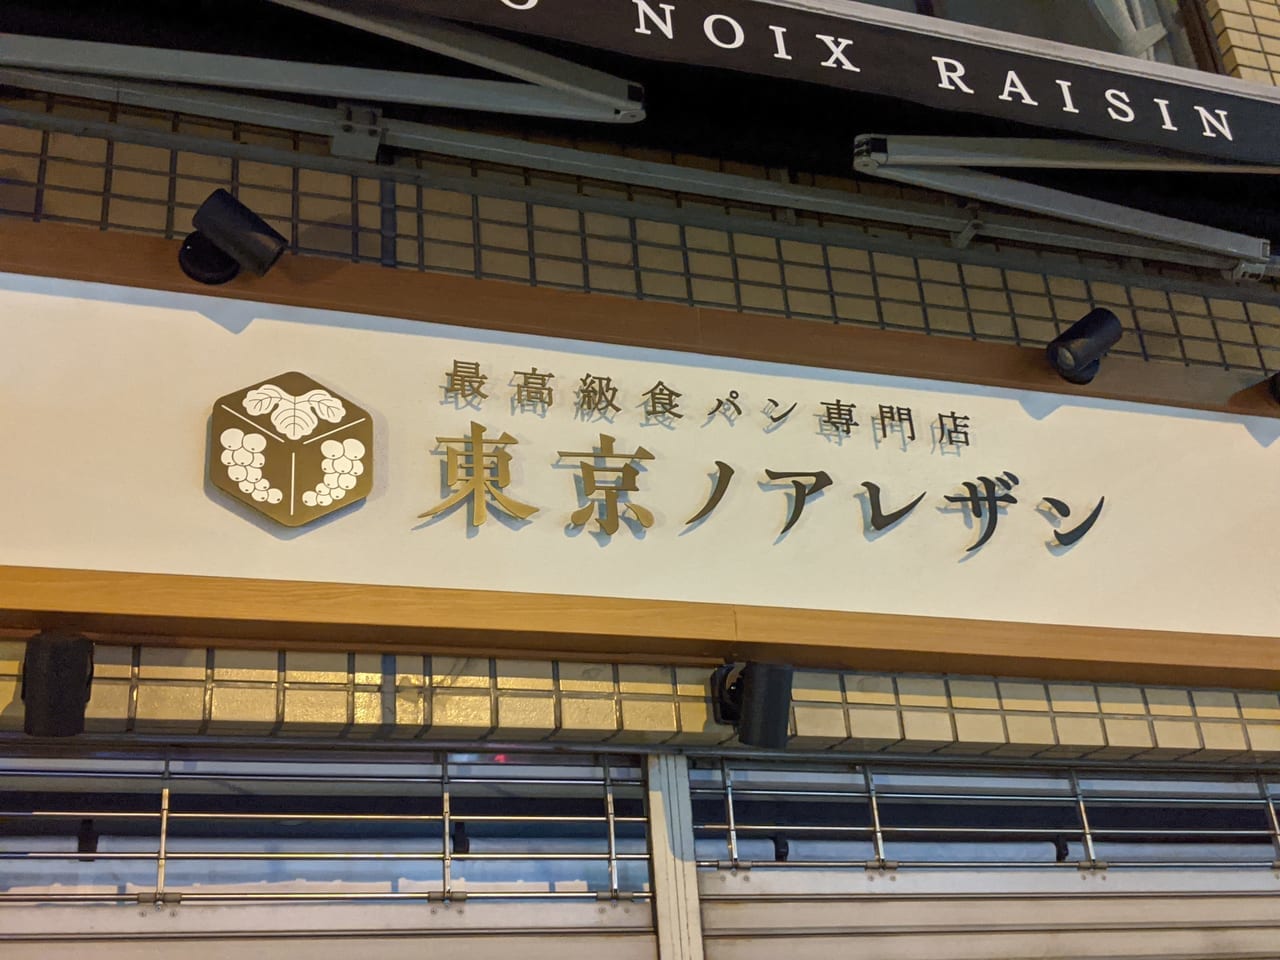 森下駅前交差点にオープンする「東京ノアレザン」の外観